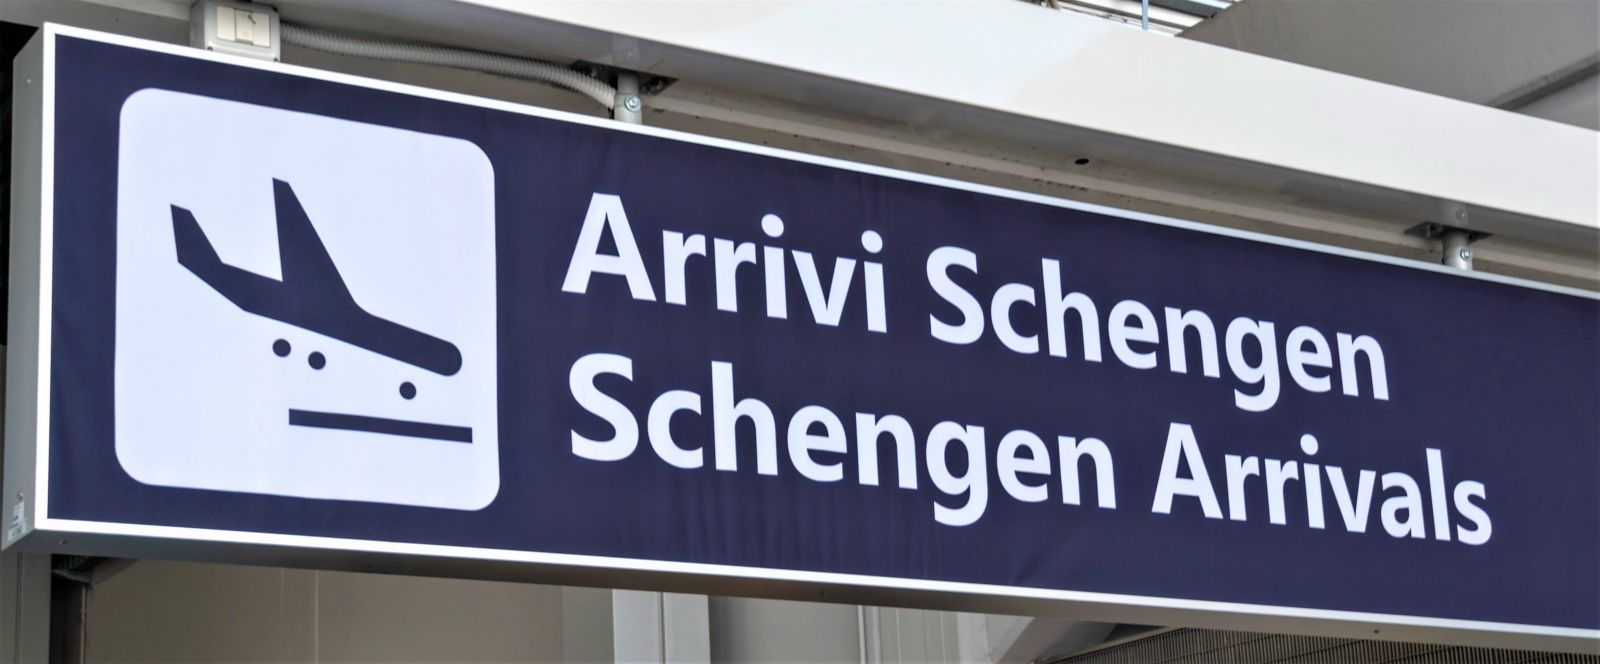 Zone of Schengen arrivals.